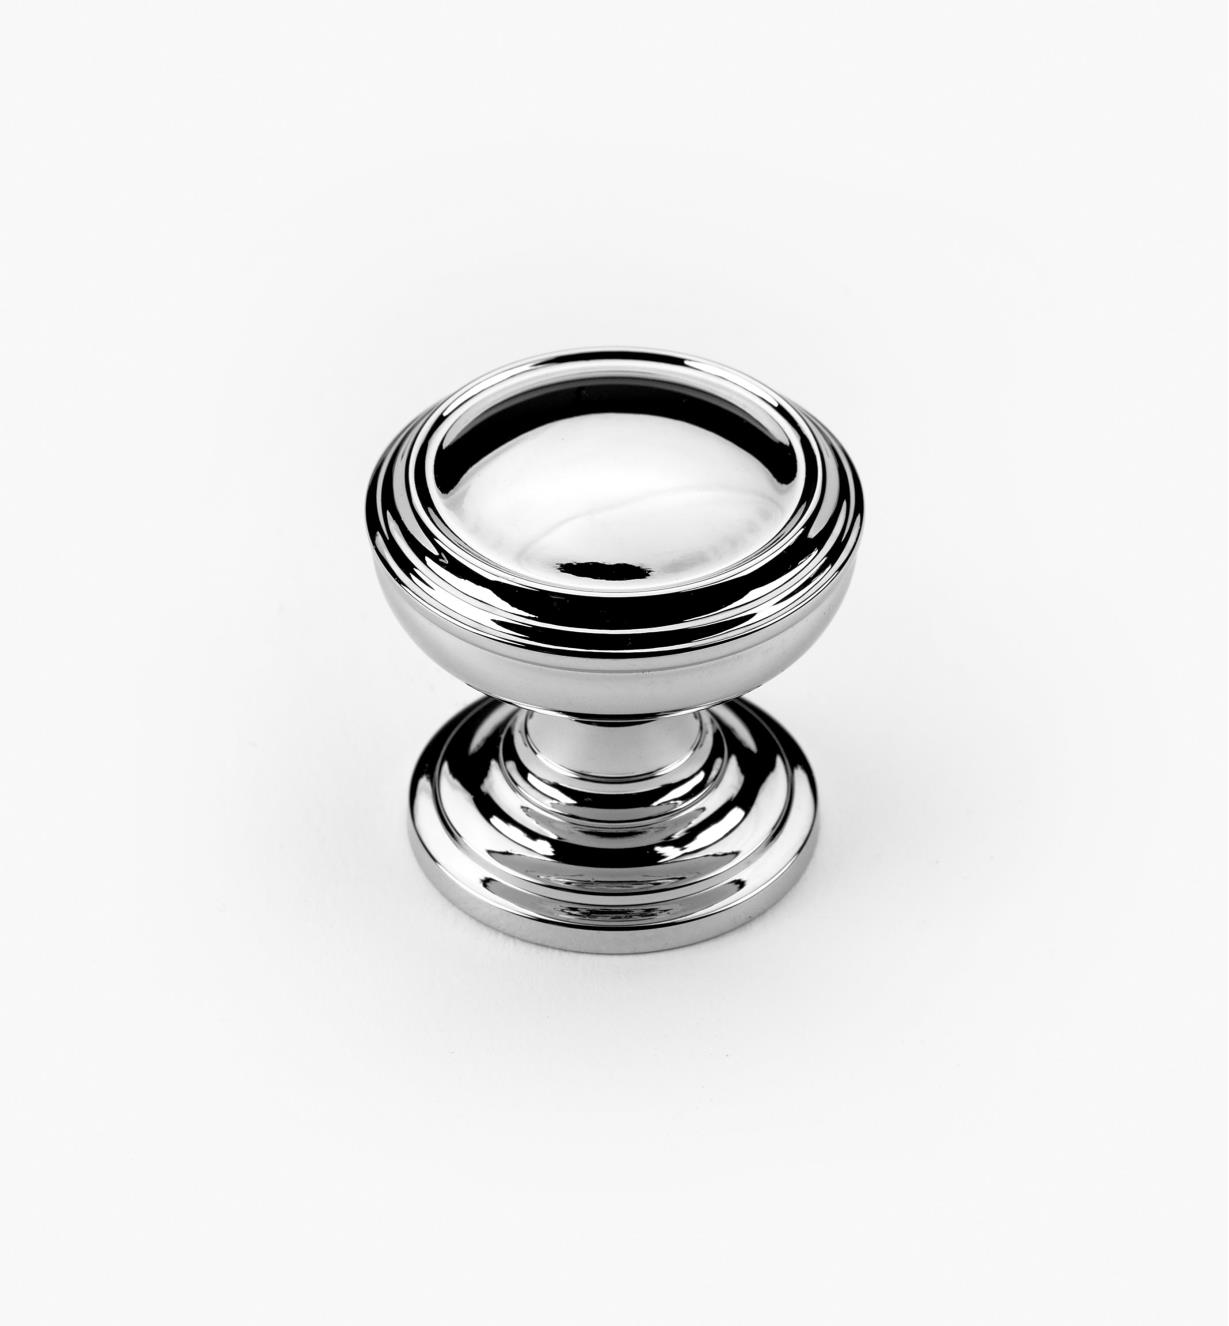 02A1670 - Revitalize Polished Chrome 1 1/4" Plain Round Knob, each